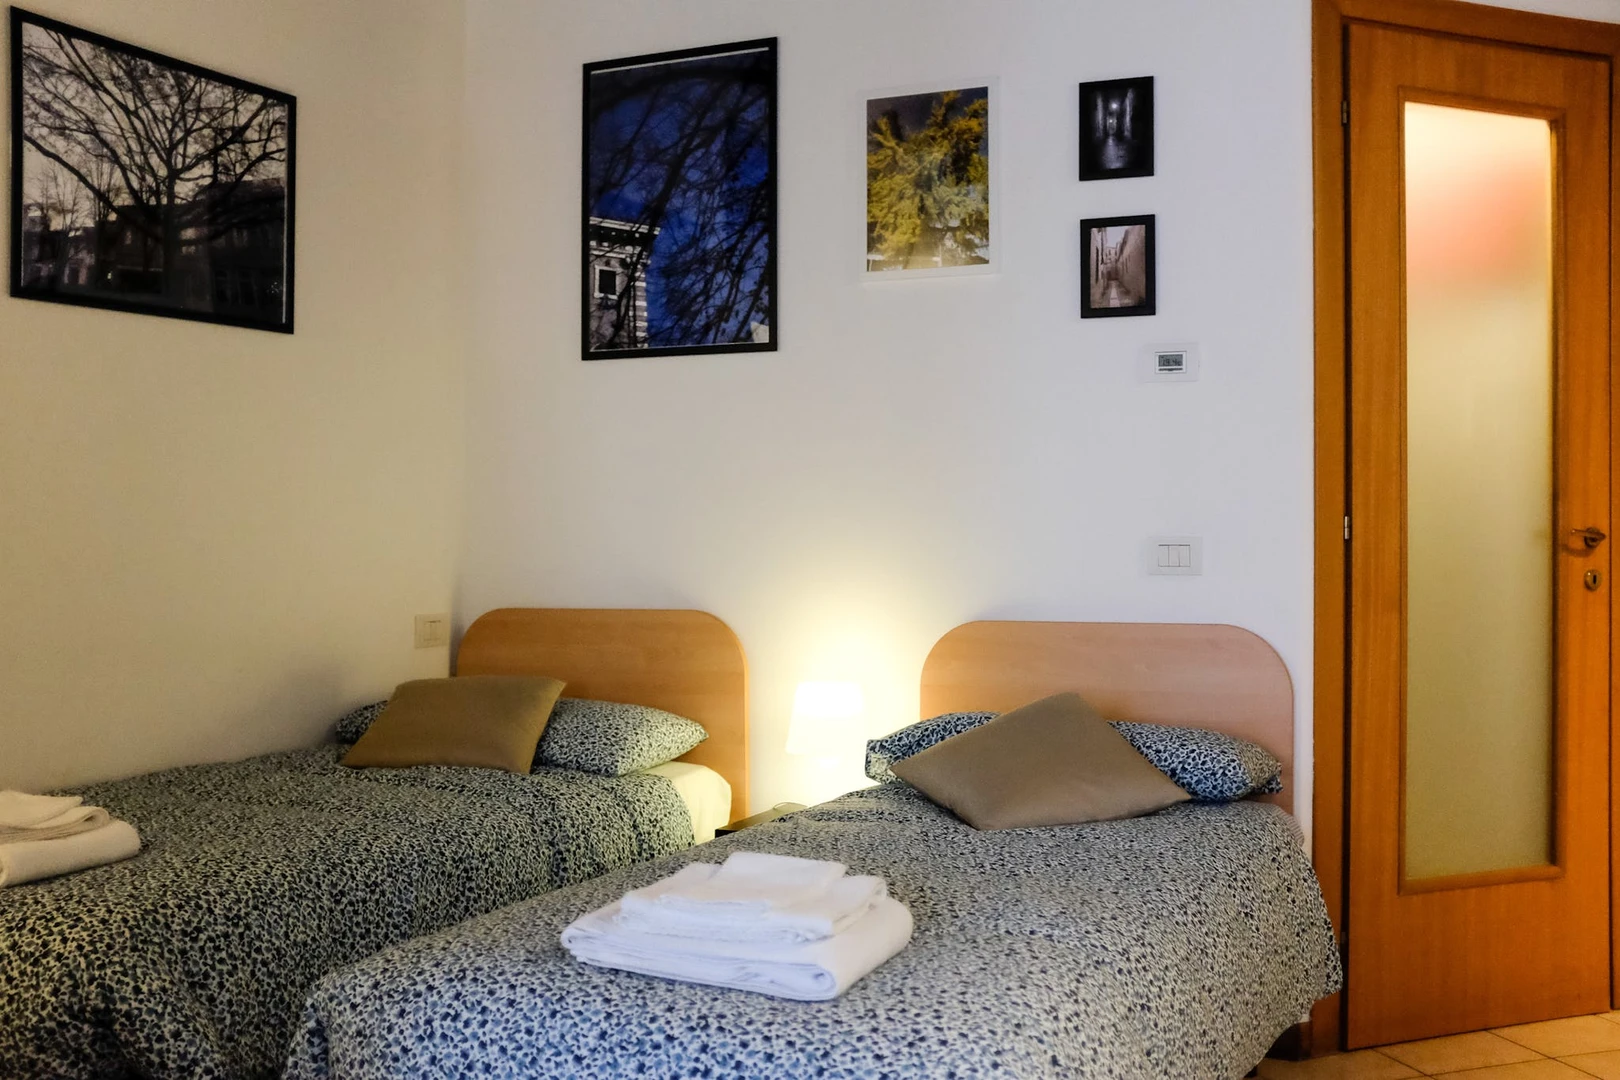 Forlì içinde 3 yatak odalı konaklama